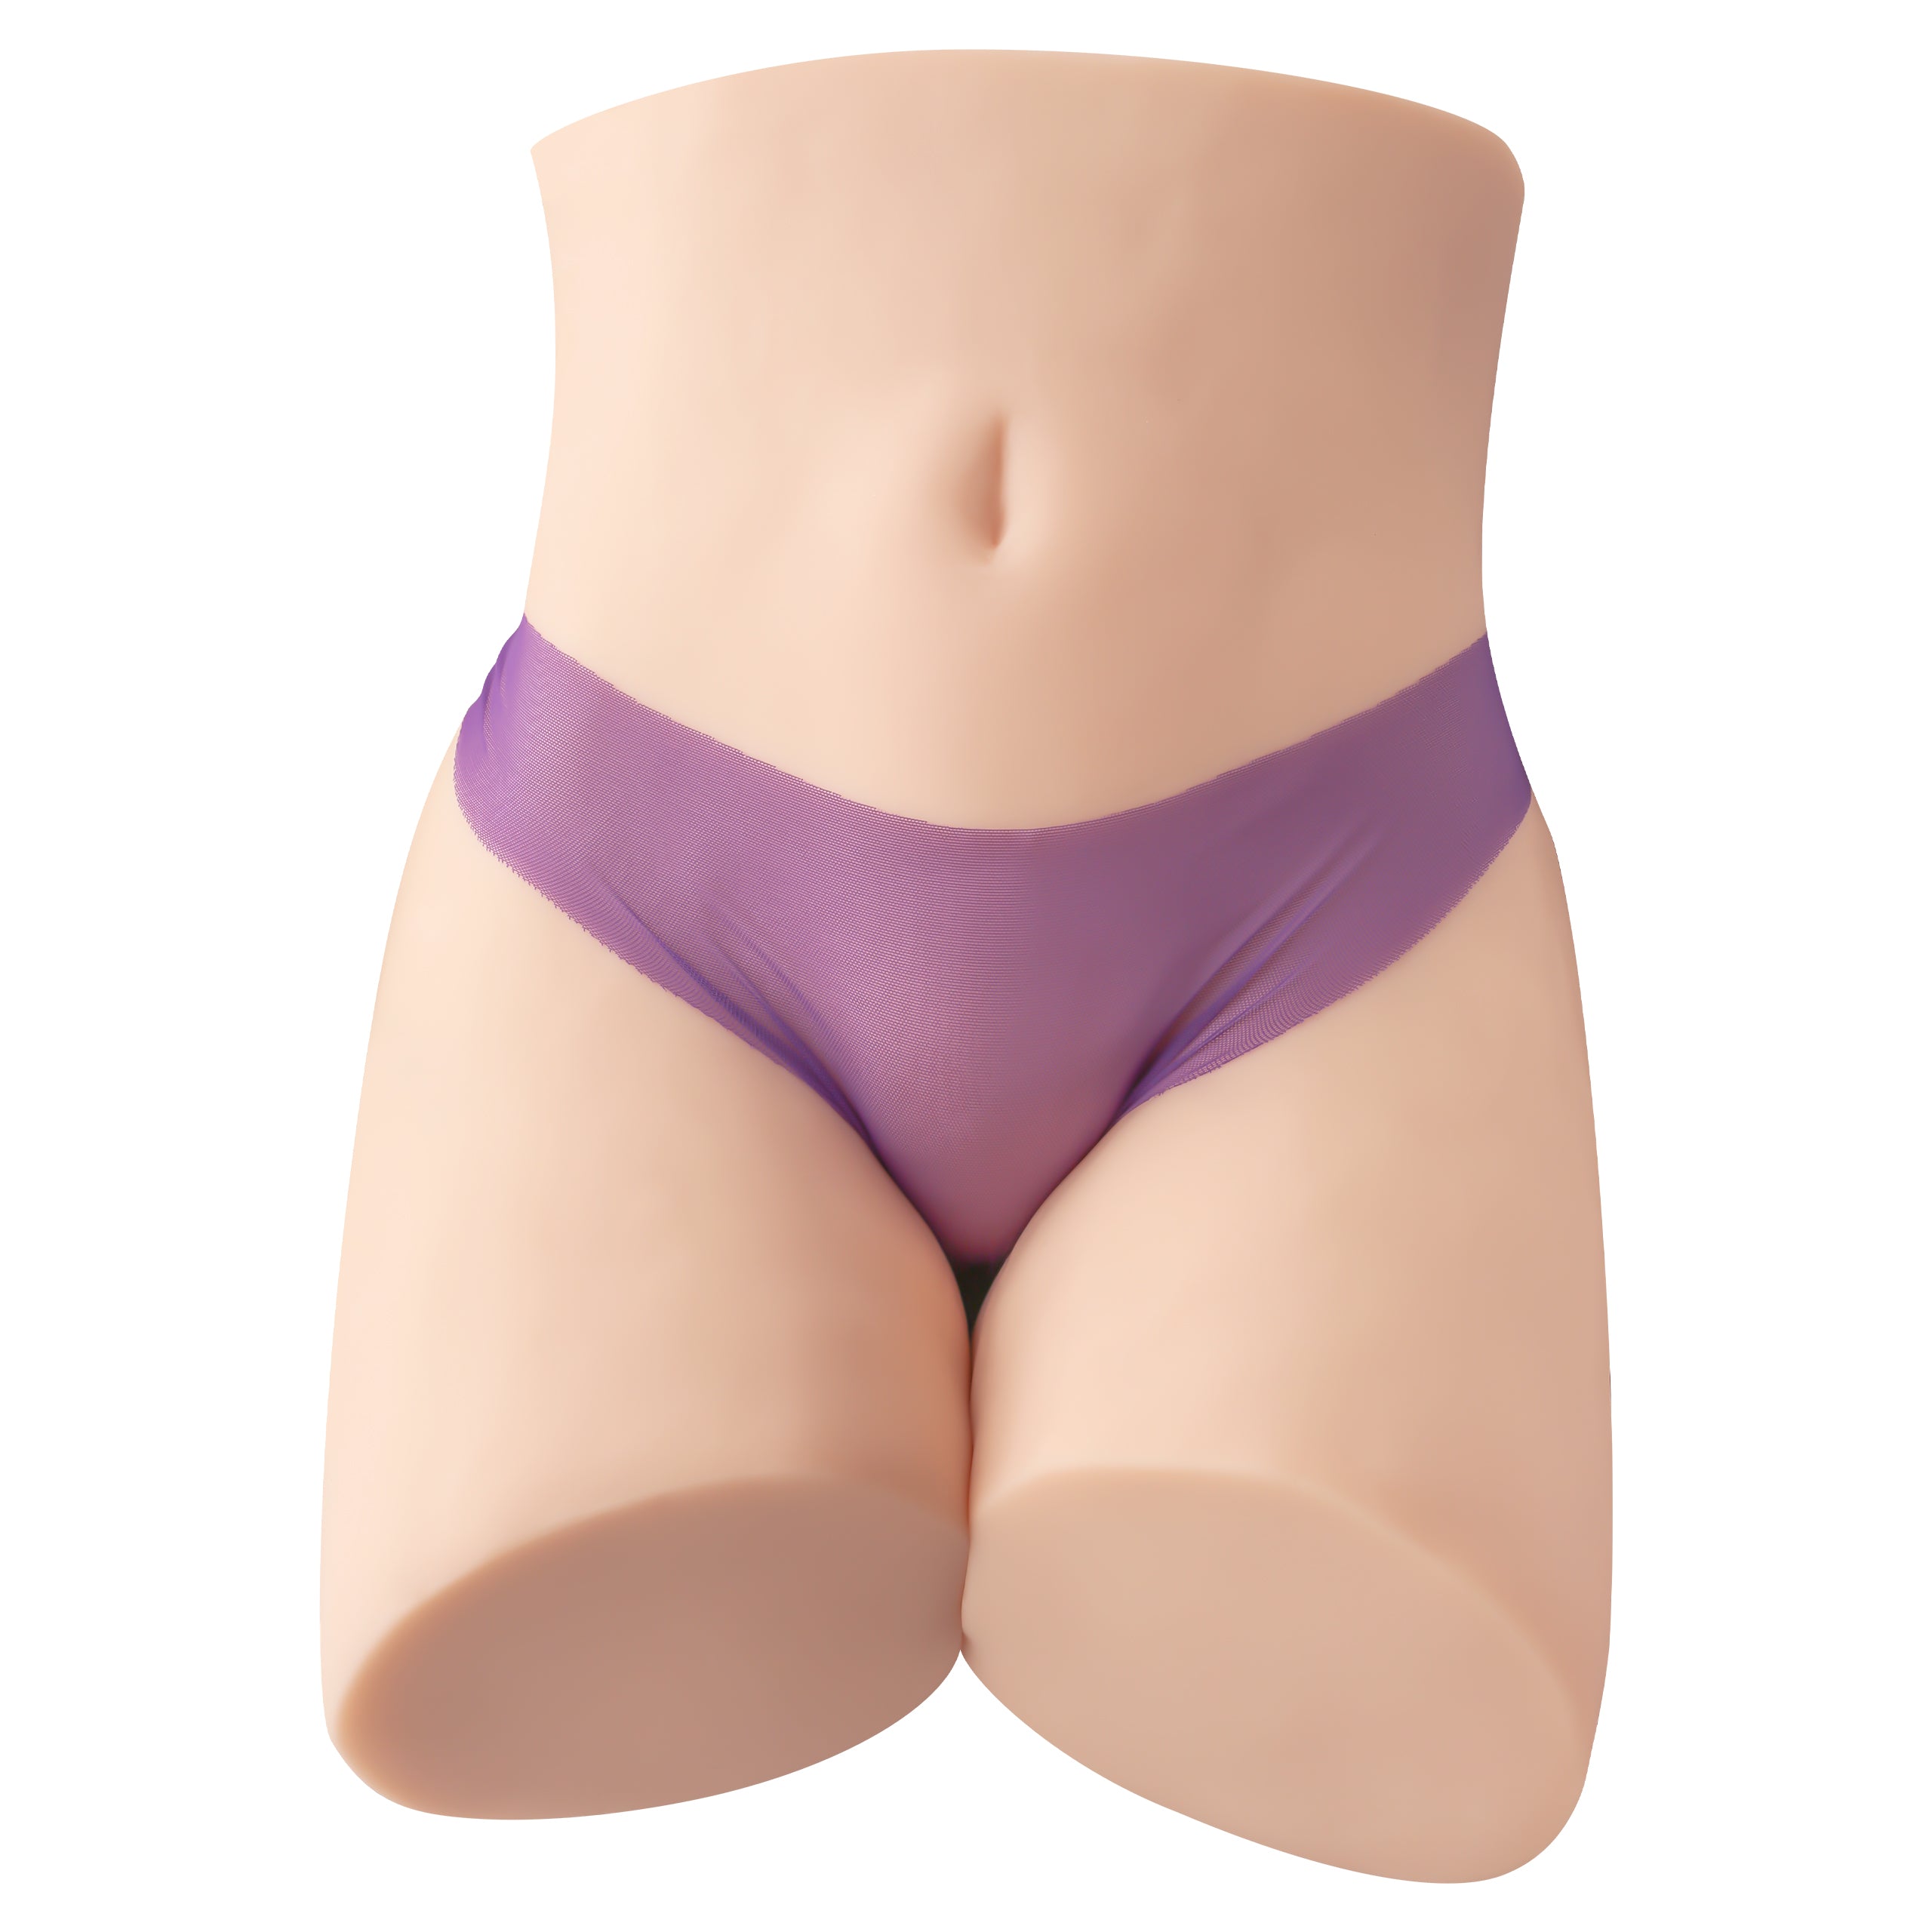 Propinkup Realistische Sexpuppe - Celine 3D Texturierte Vagina Männliche Masturbation Lebensechte Haut Hintern 